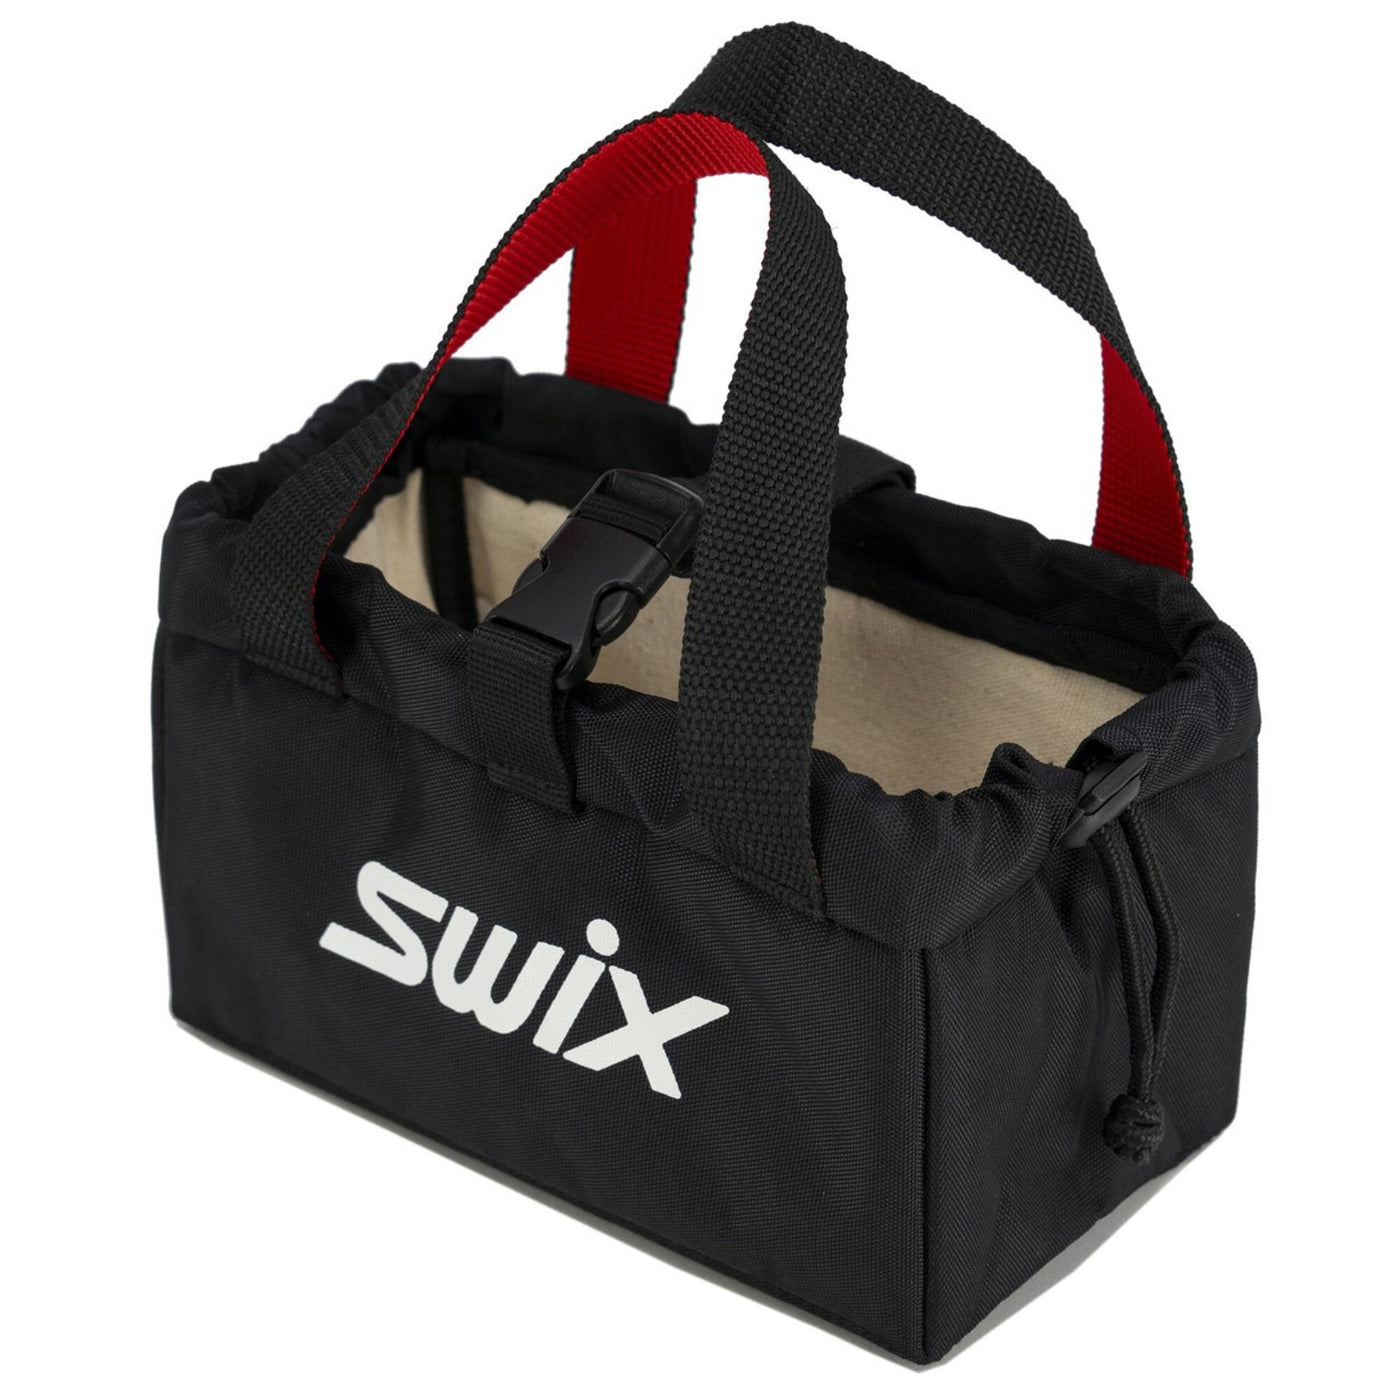 Swix Iron Bag TUNING EQUIPMENT Swix   